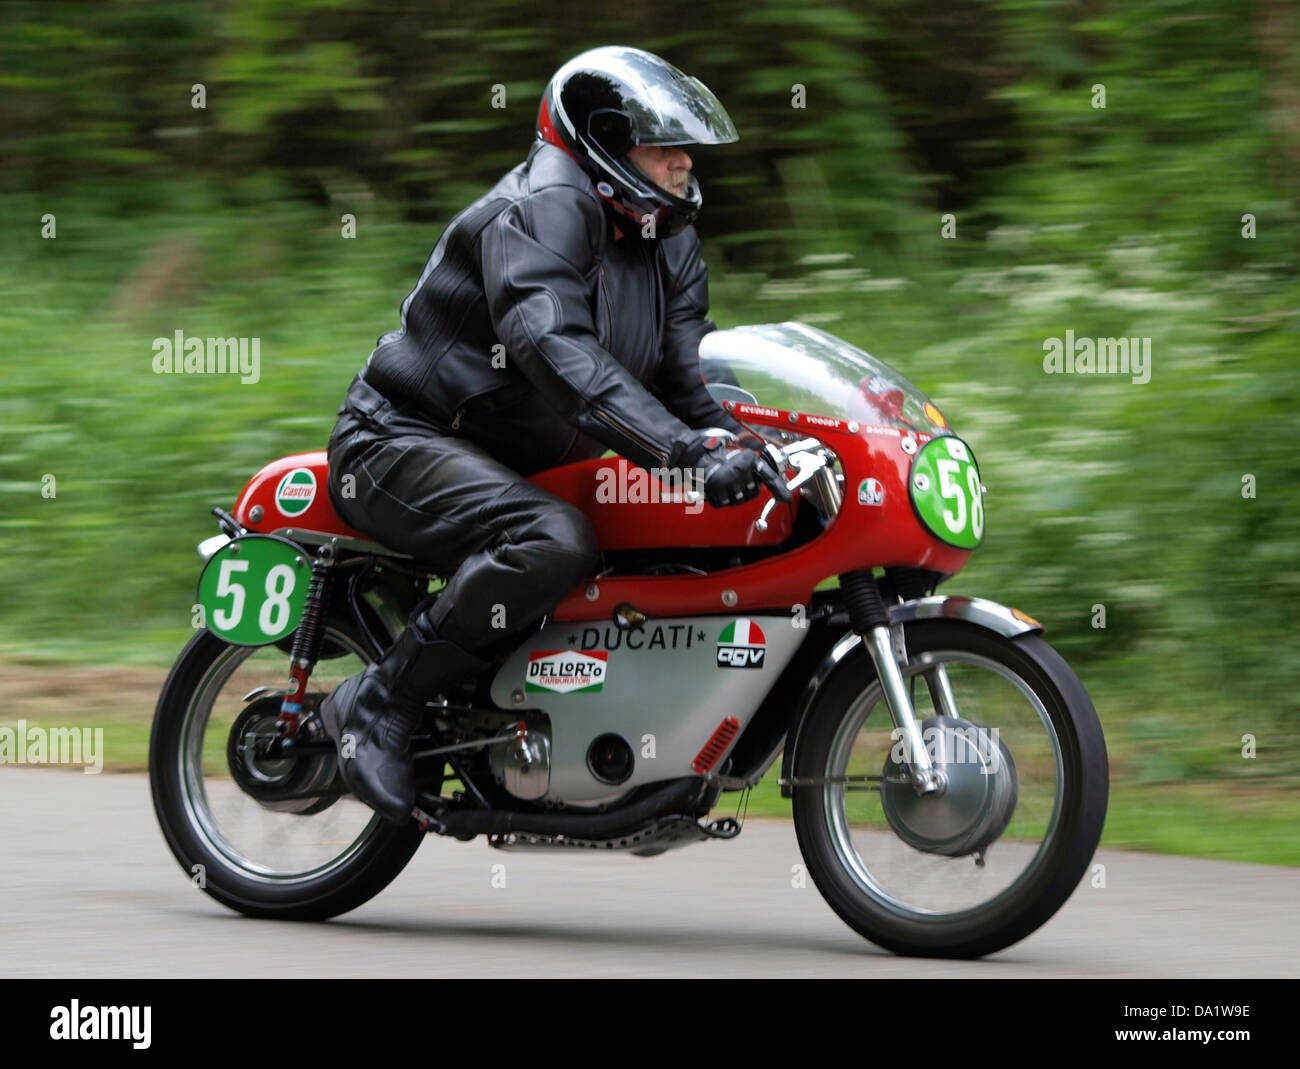 Ducati No58 Stock Photo